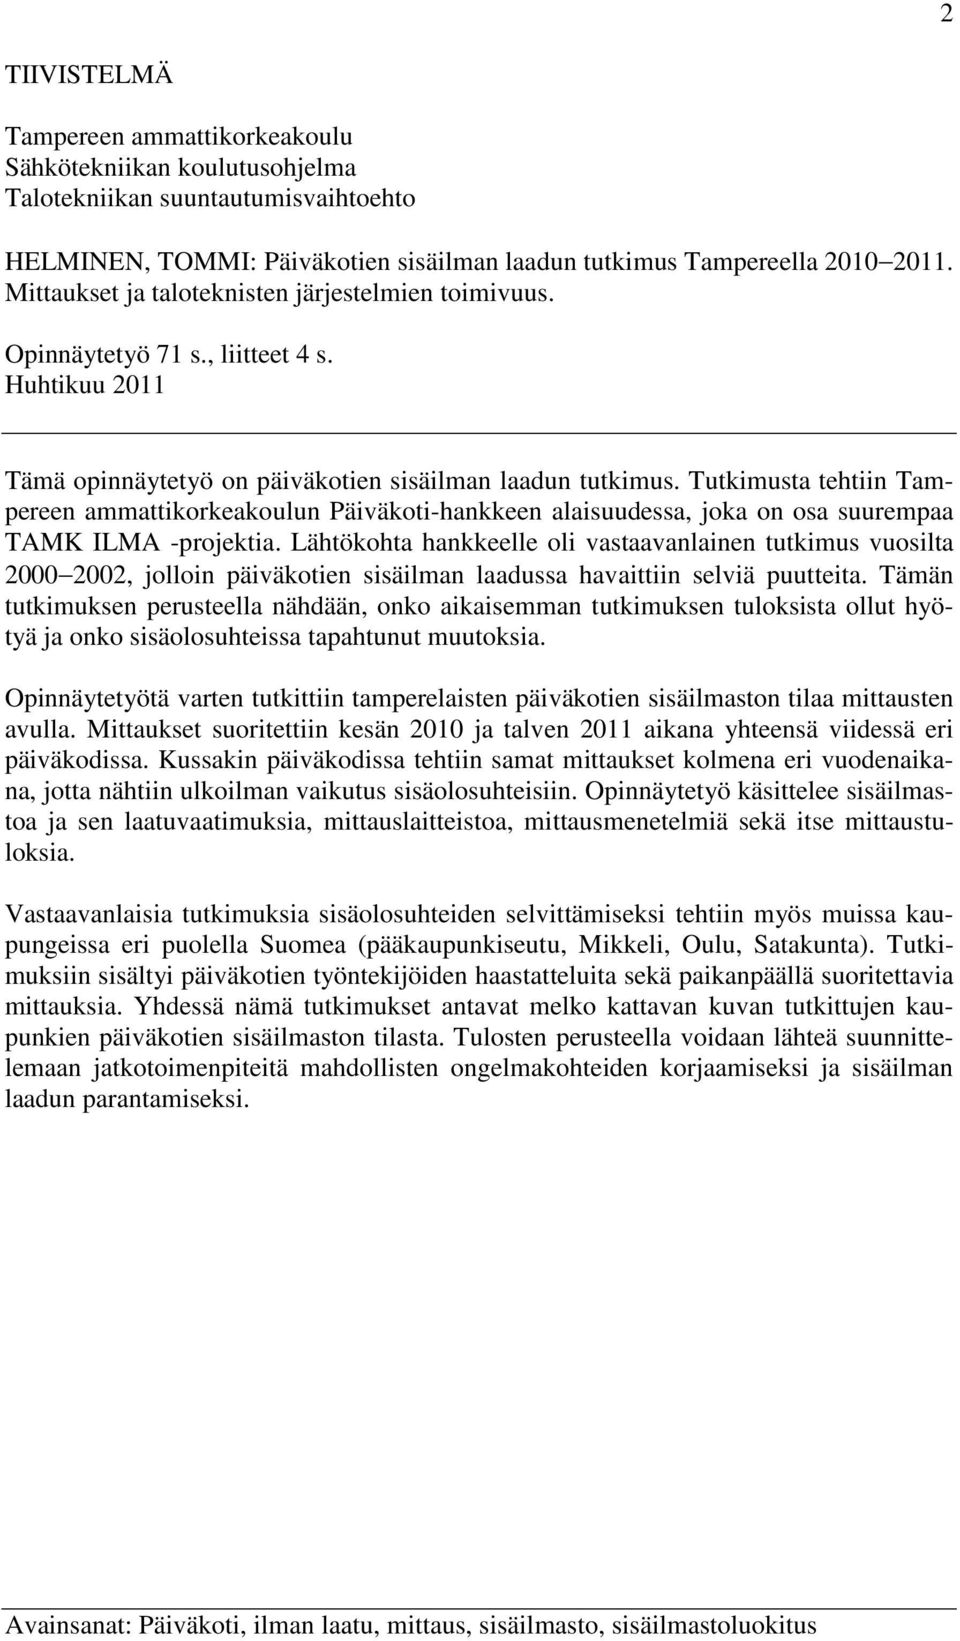 Tutkimusta tehtiin Tampereen ammattikorkeakoulun Päiväkoti-hankkeen alaisuudessa, joka on osa suurempaa TAMK ILMA -projektia.